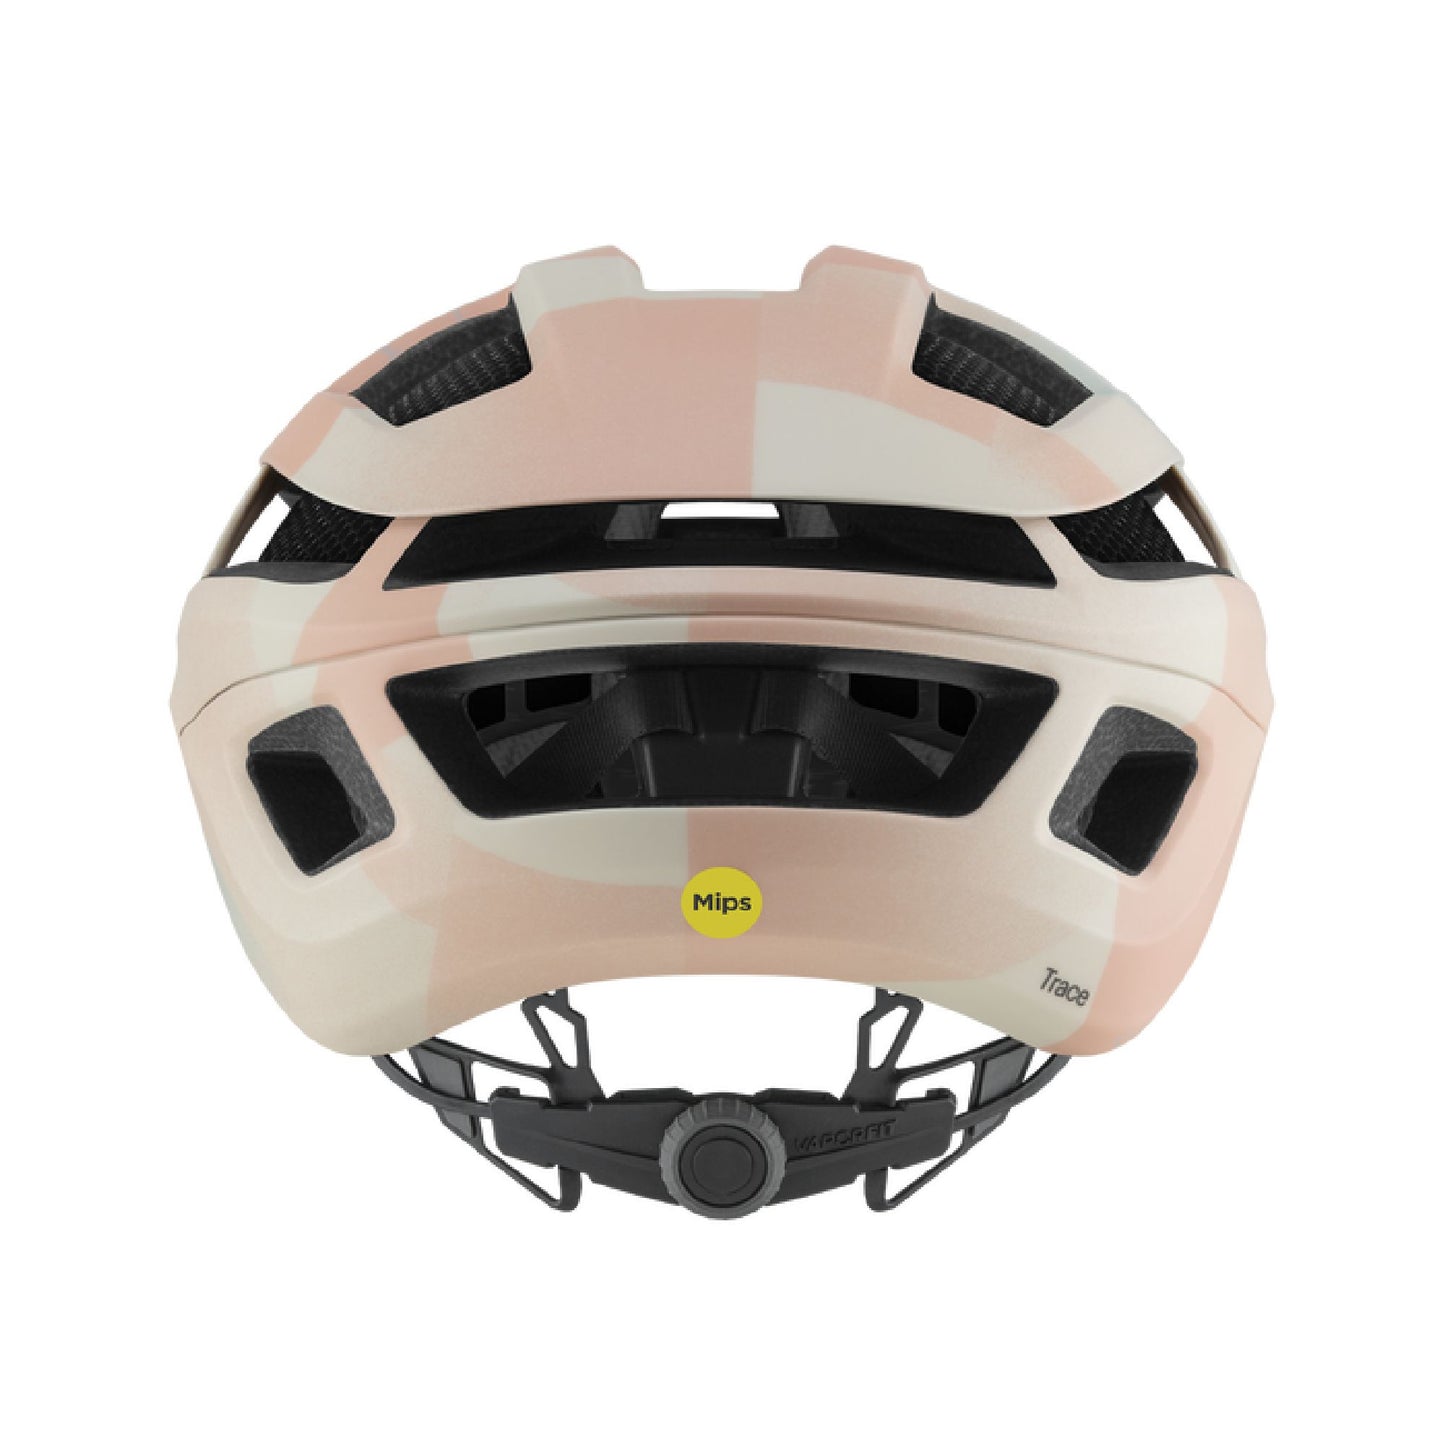 Smith Trace MIPS Helmet Matte Bone Gradient Bike Helmets